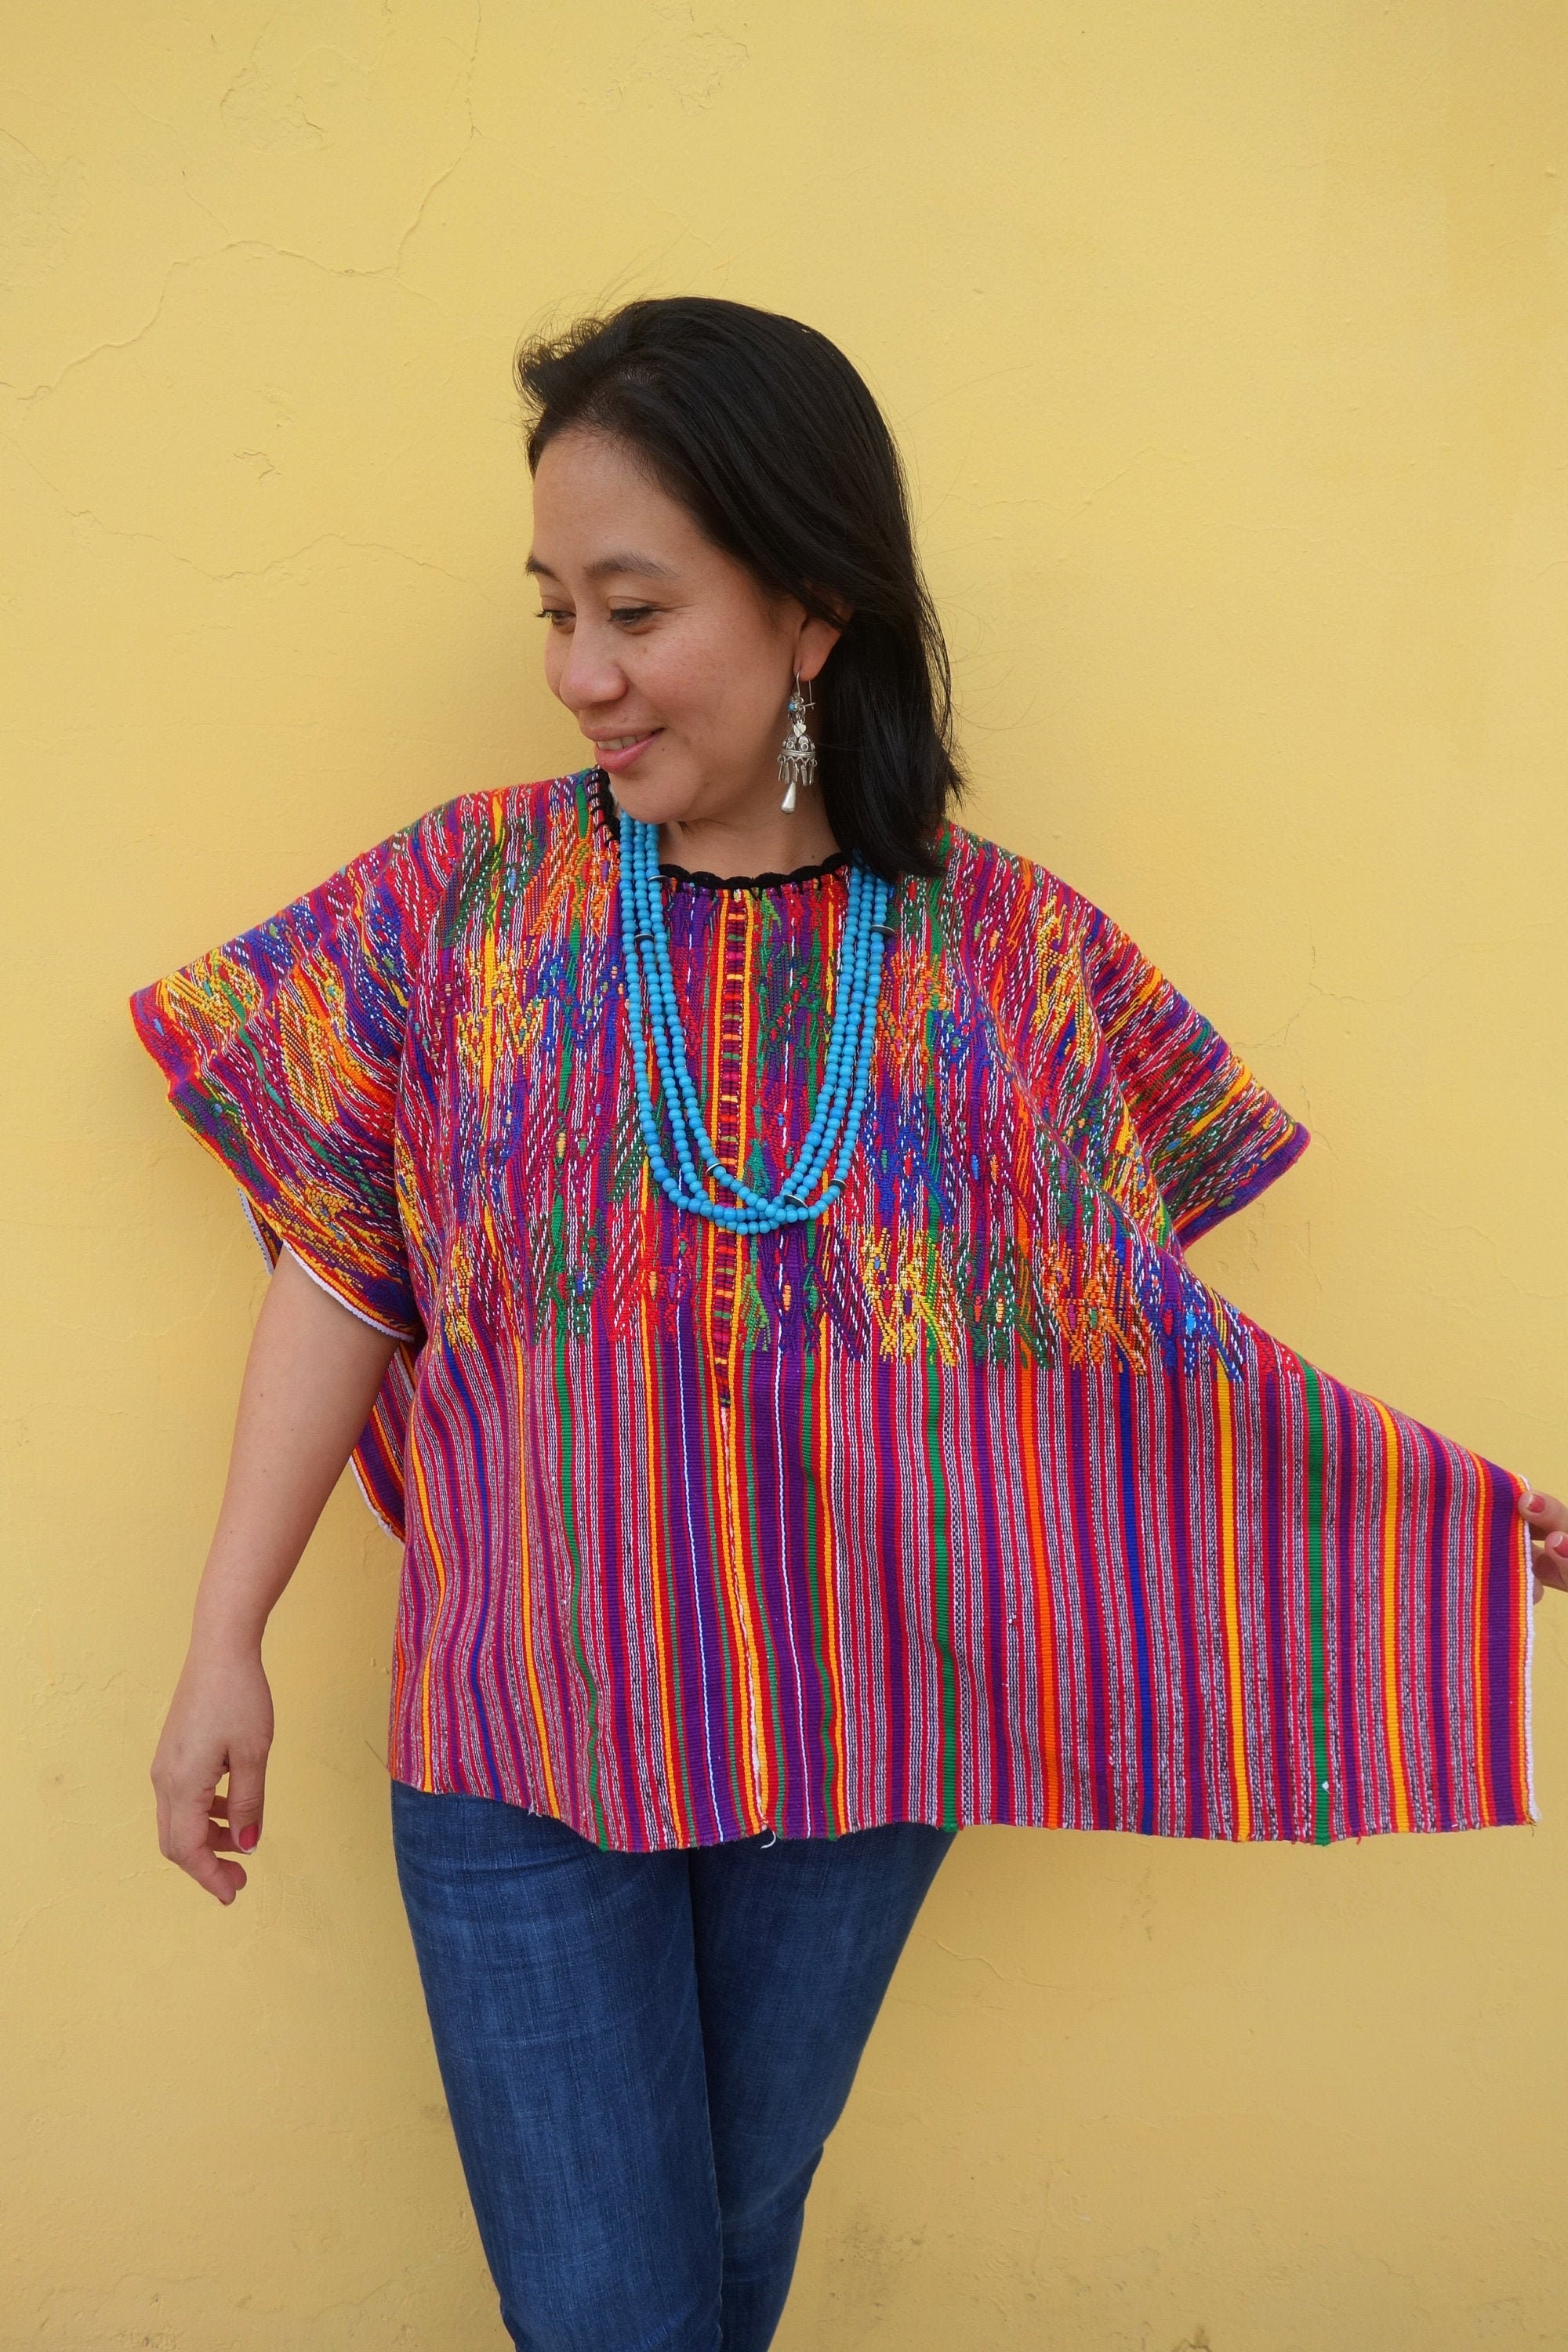 Handwoven Vintage Ethnic Mayan Guatemalan Textile Huipil | Etsy